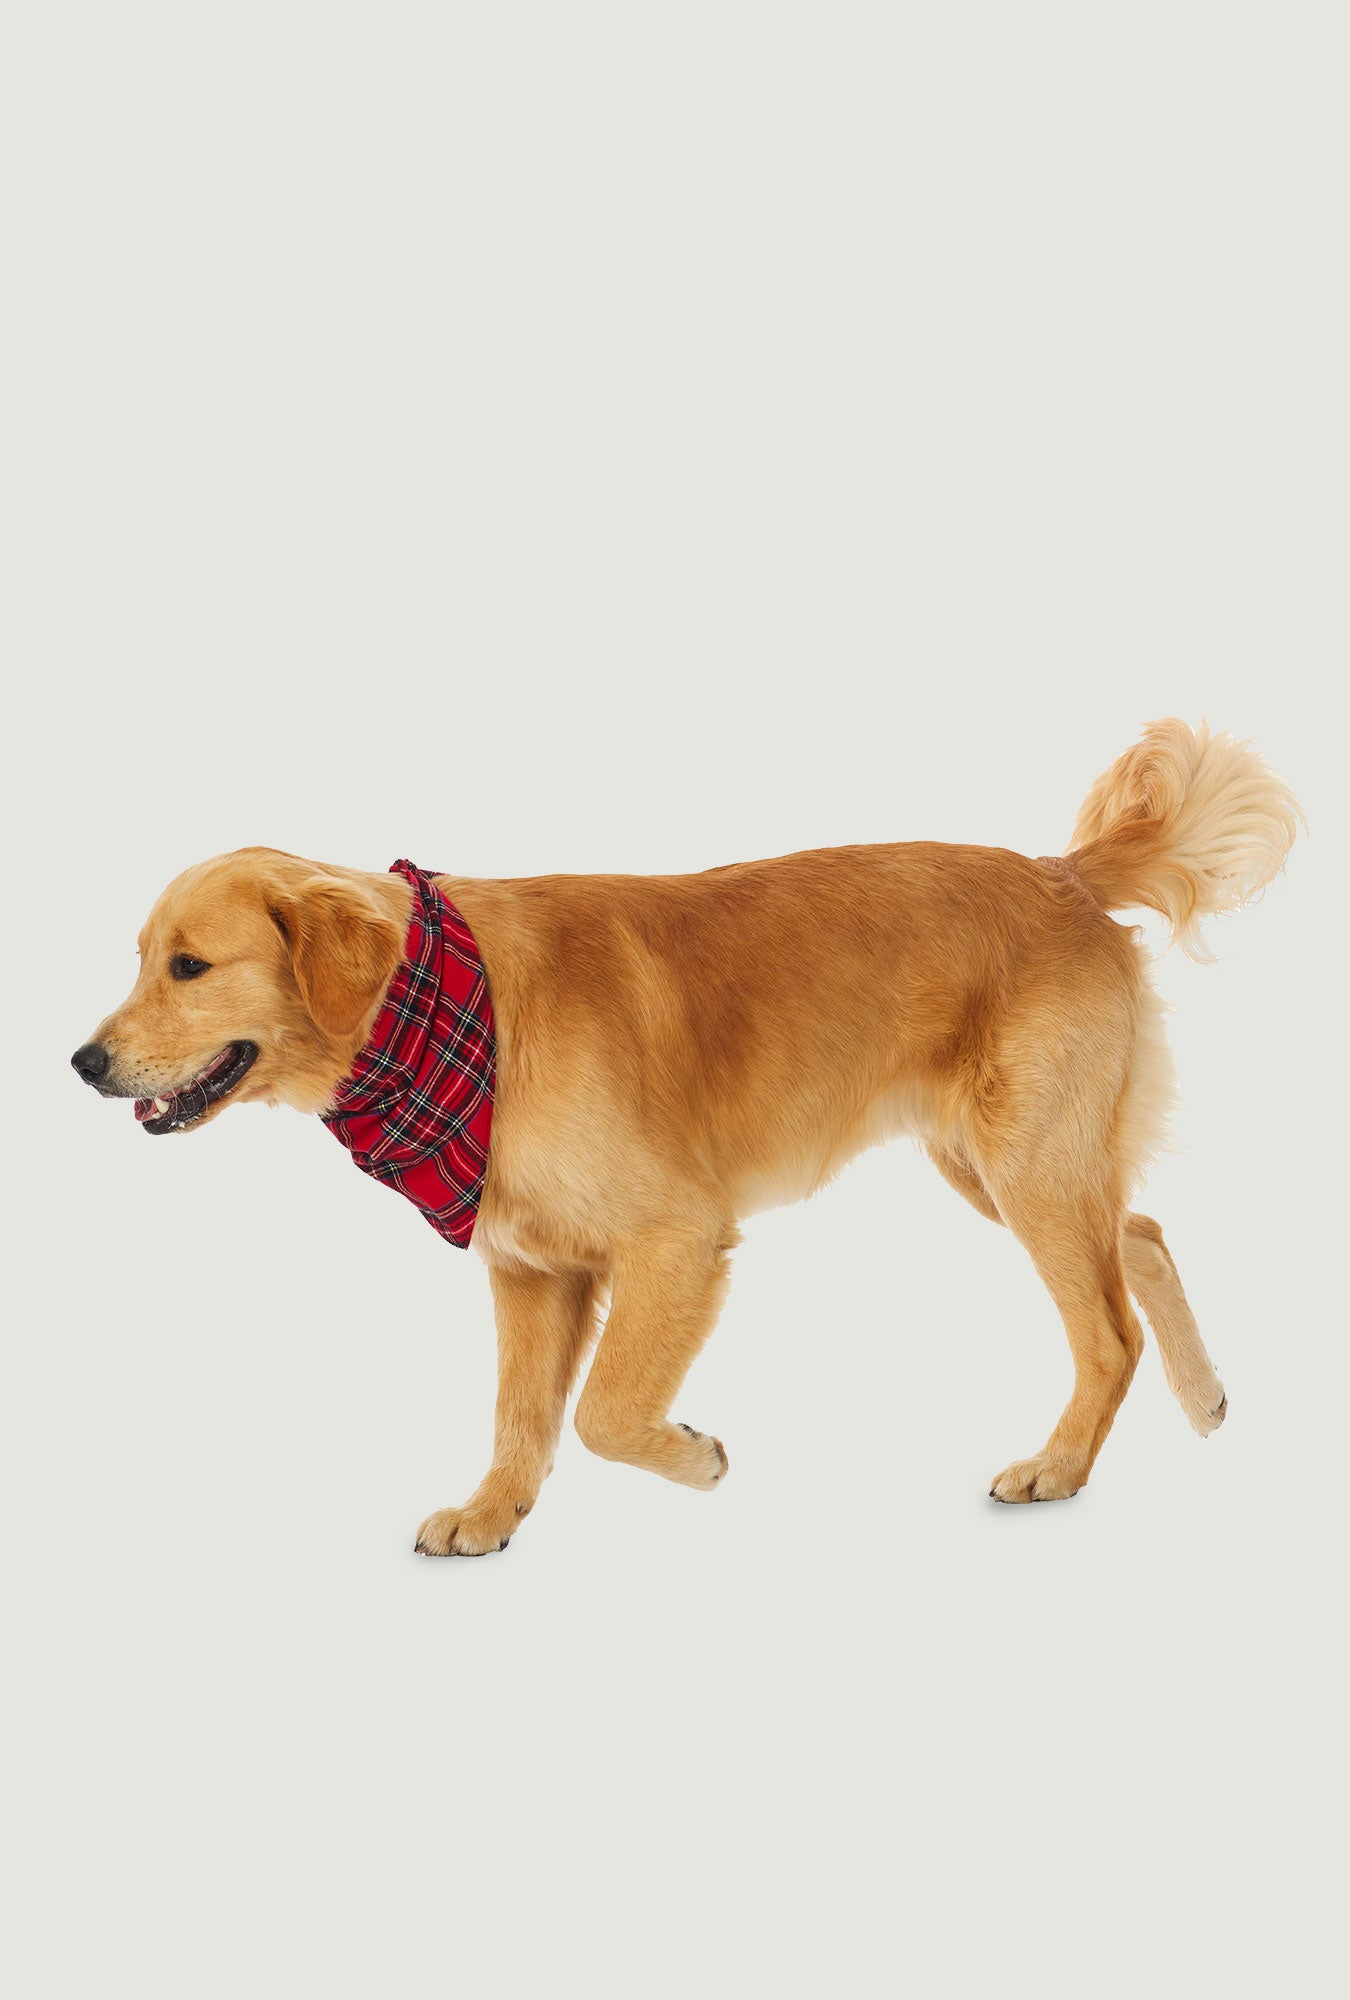 A dog wearing a red tartan bandana.